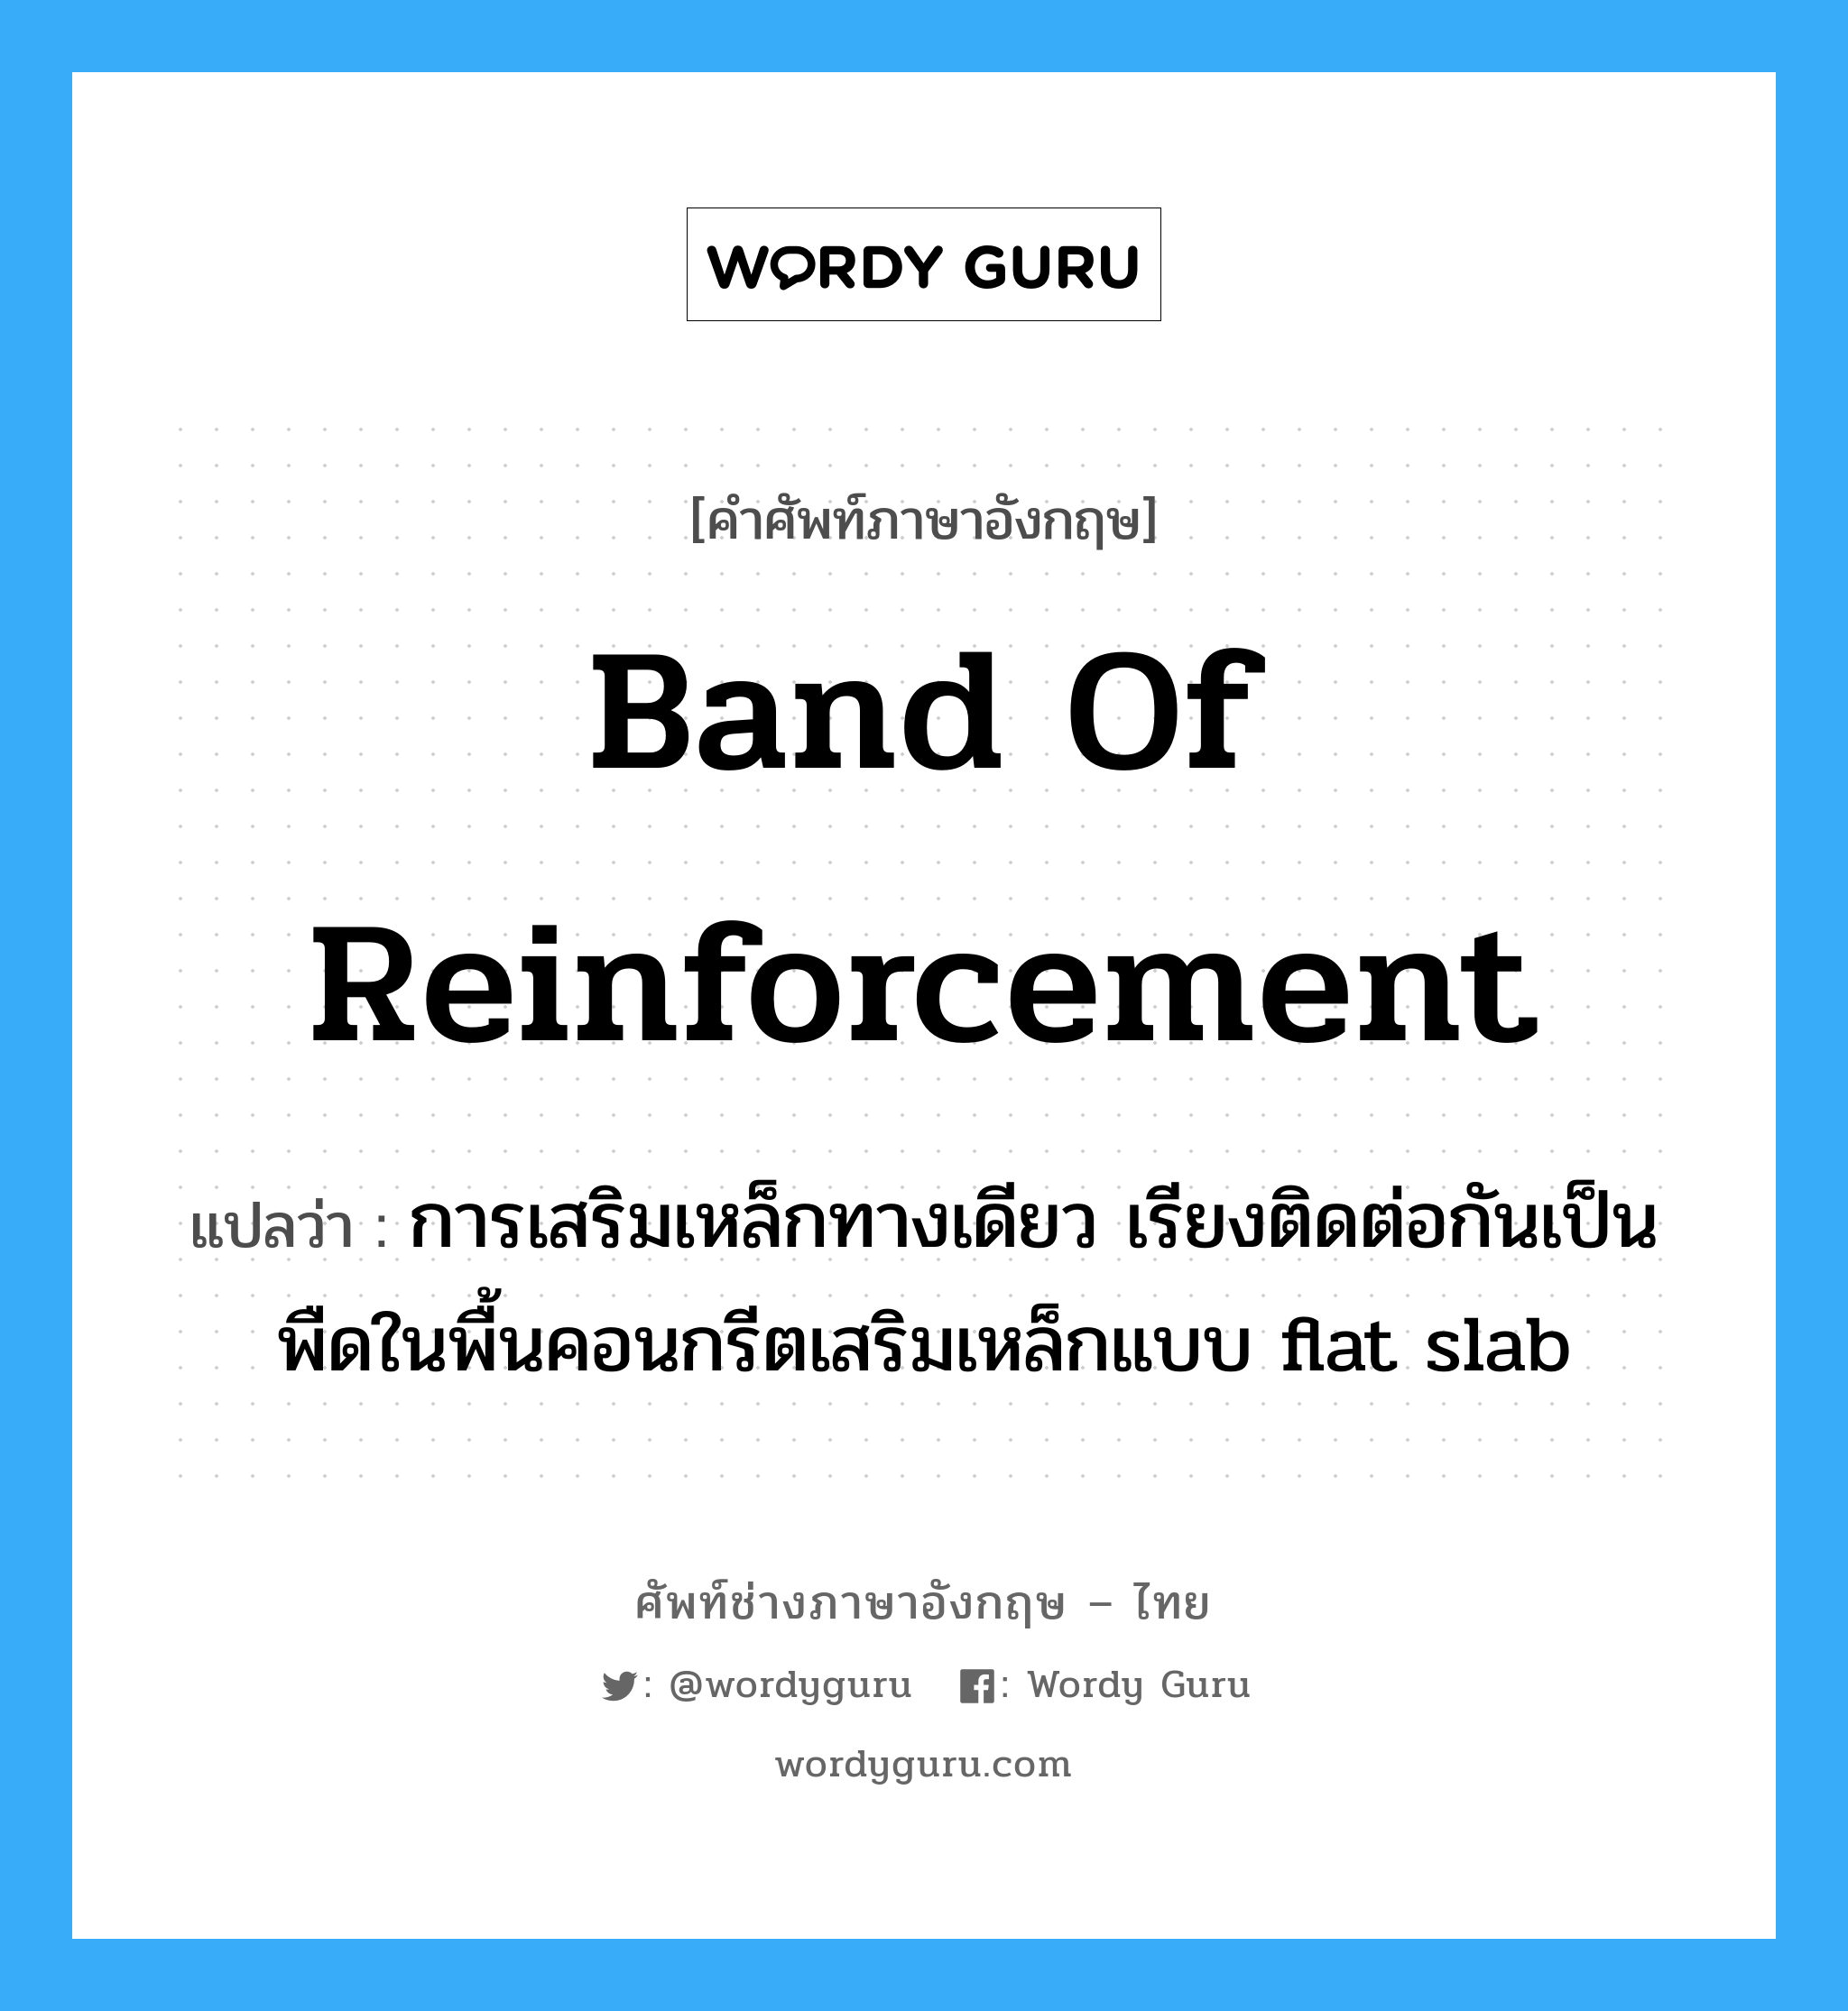 band of reinforcement แปลว่า?, คำศัพท์ช่างภาษาอังกฤษ - ไทย band of reinforcement คำศัพท์ภาษาอังกฤษ band of reinforcement แปลว่า การเสริมเหล็กทางเดียว เรียงติดต่อกันเป็นพืดในพื้นคอนกรีตเสริมเหล็กแบบ flat slab